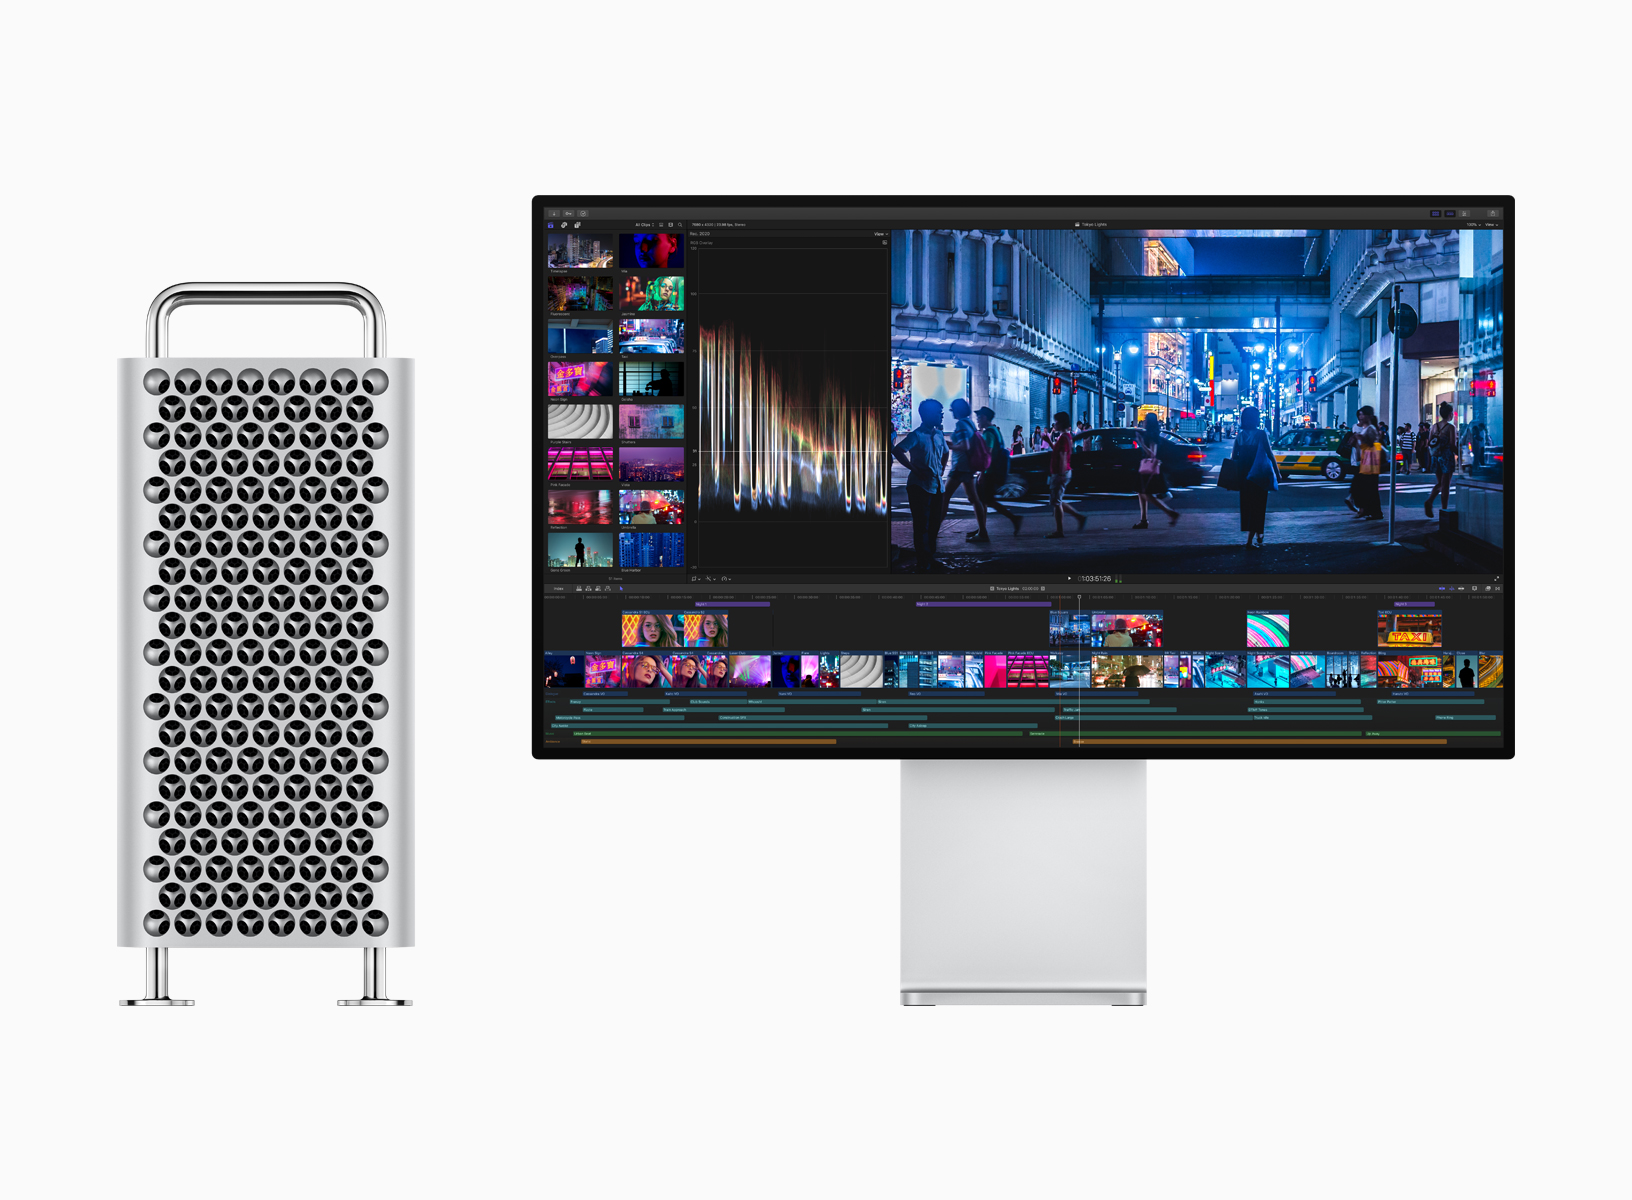 Mac Pro Pro Display XDR